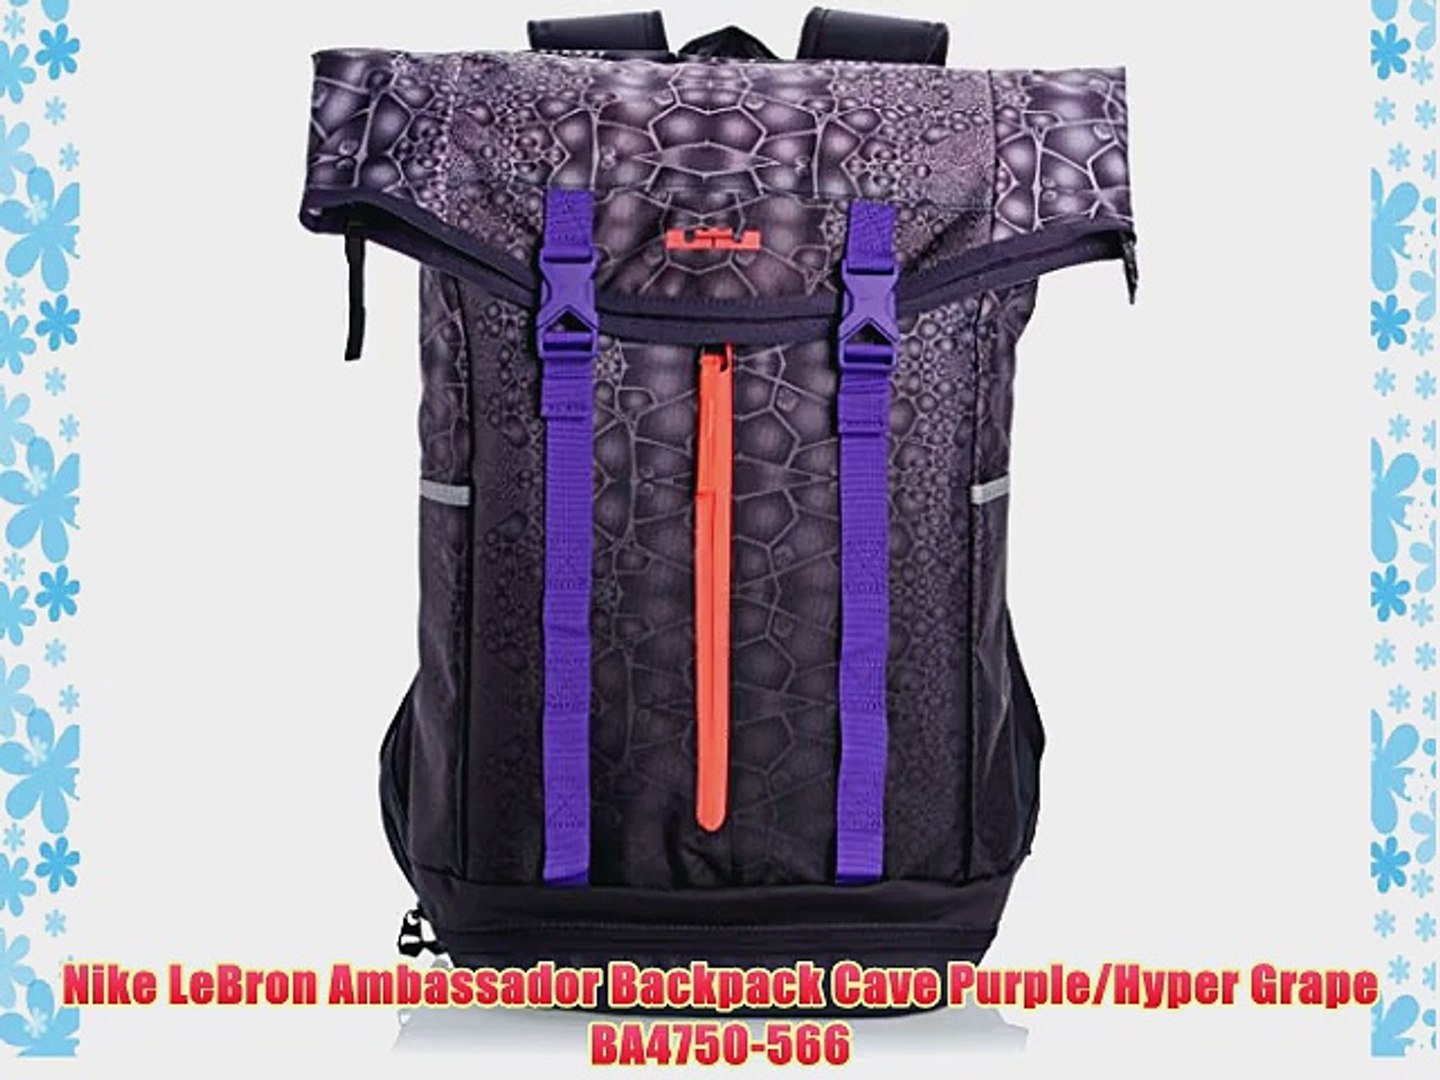 lebron ambassador backpack review